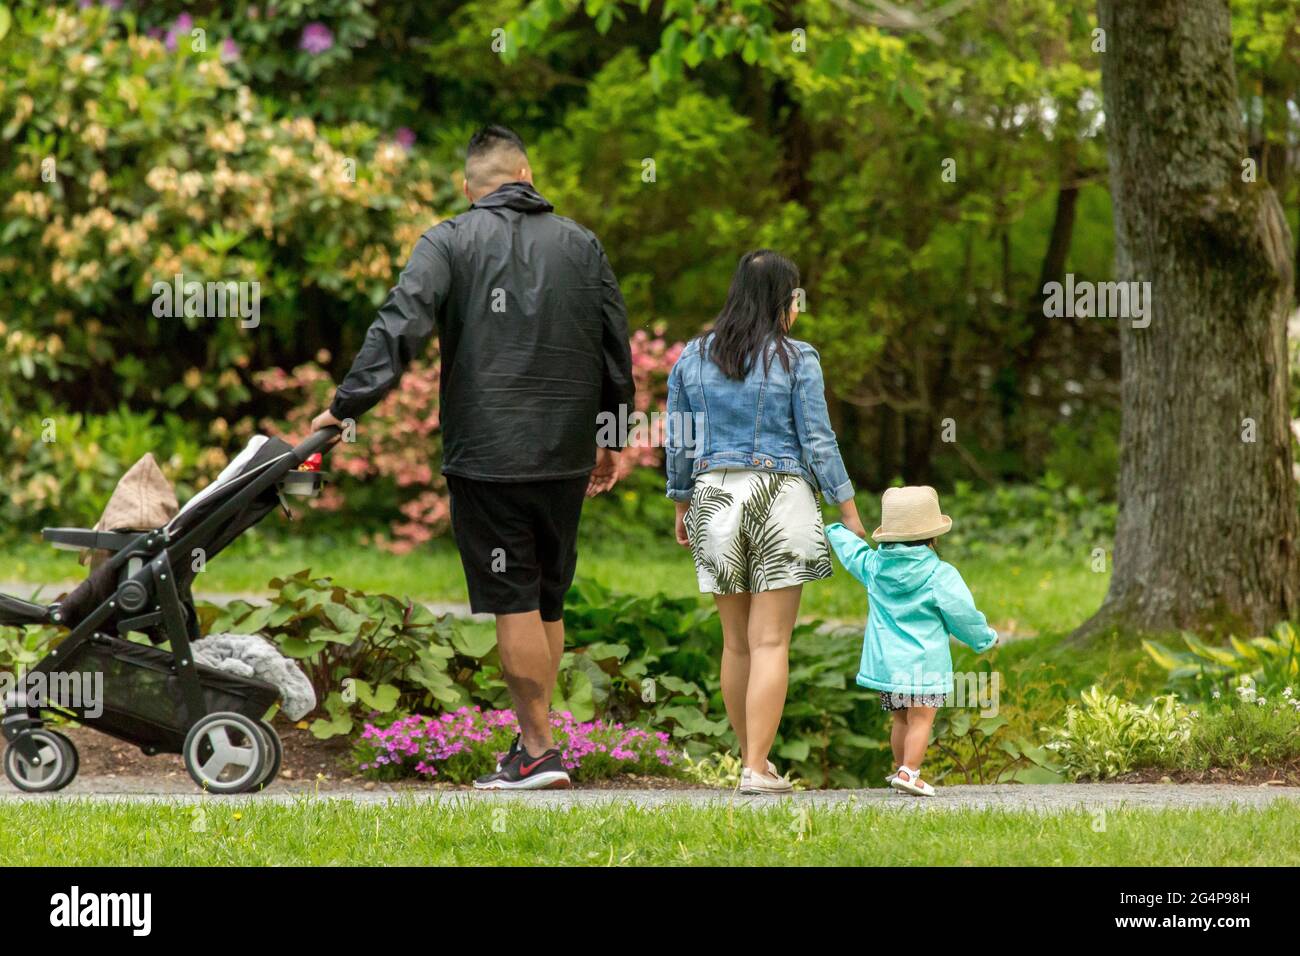 Ein junges Paar mit Tochter, das in einem öffentlichen Park mit dichtem Grün spazierengeht. Stockfoto